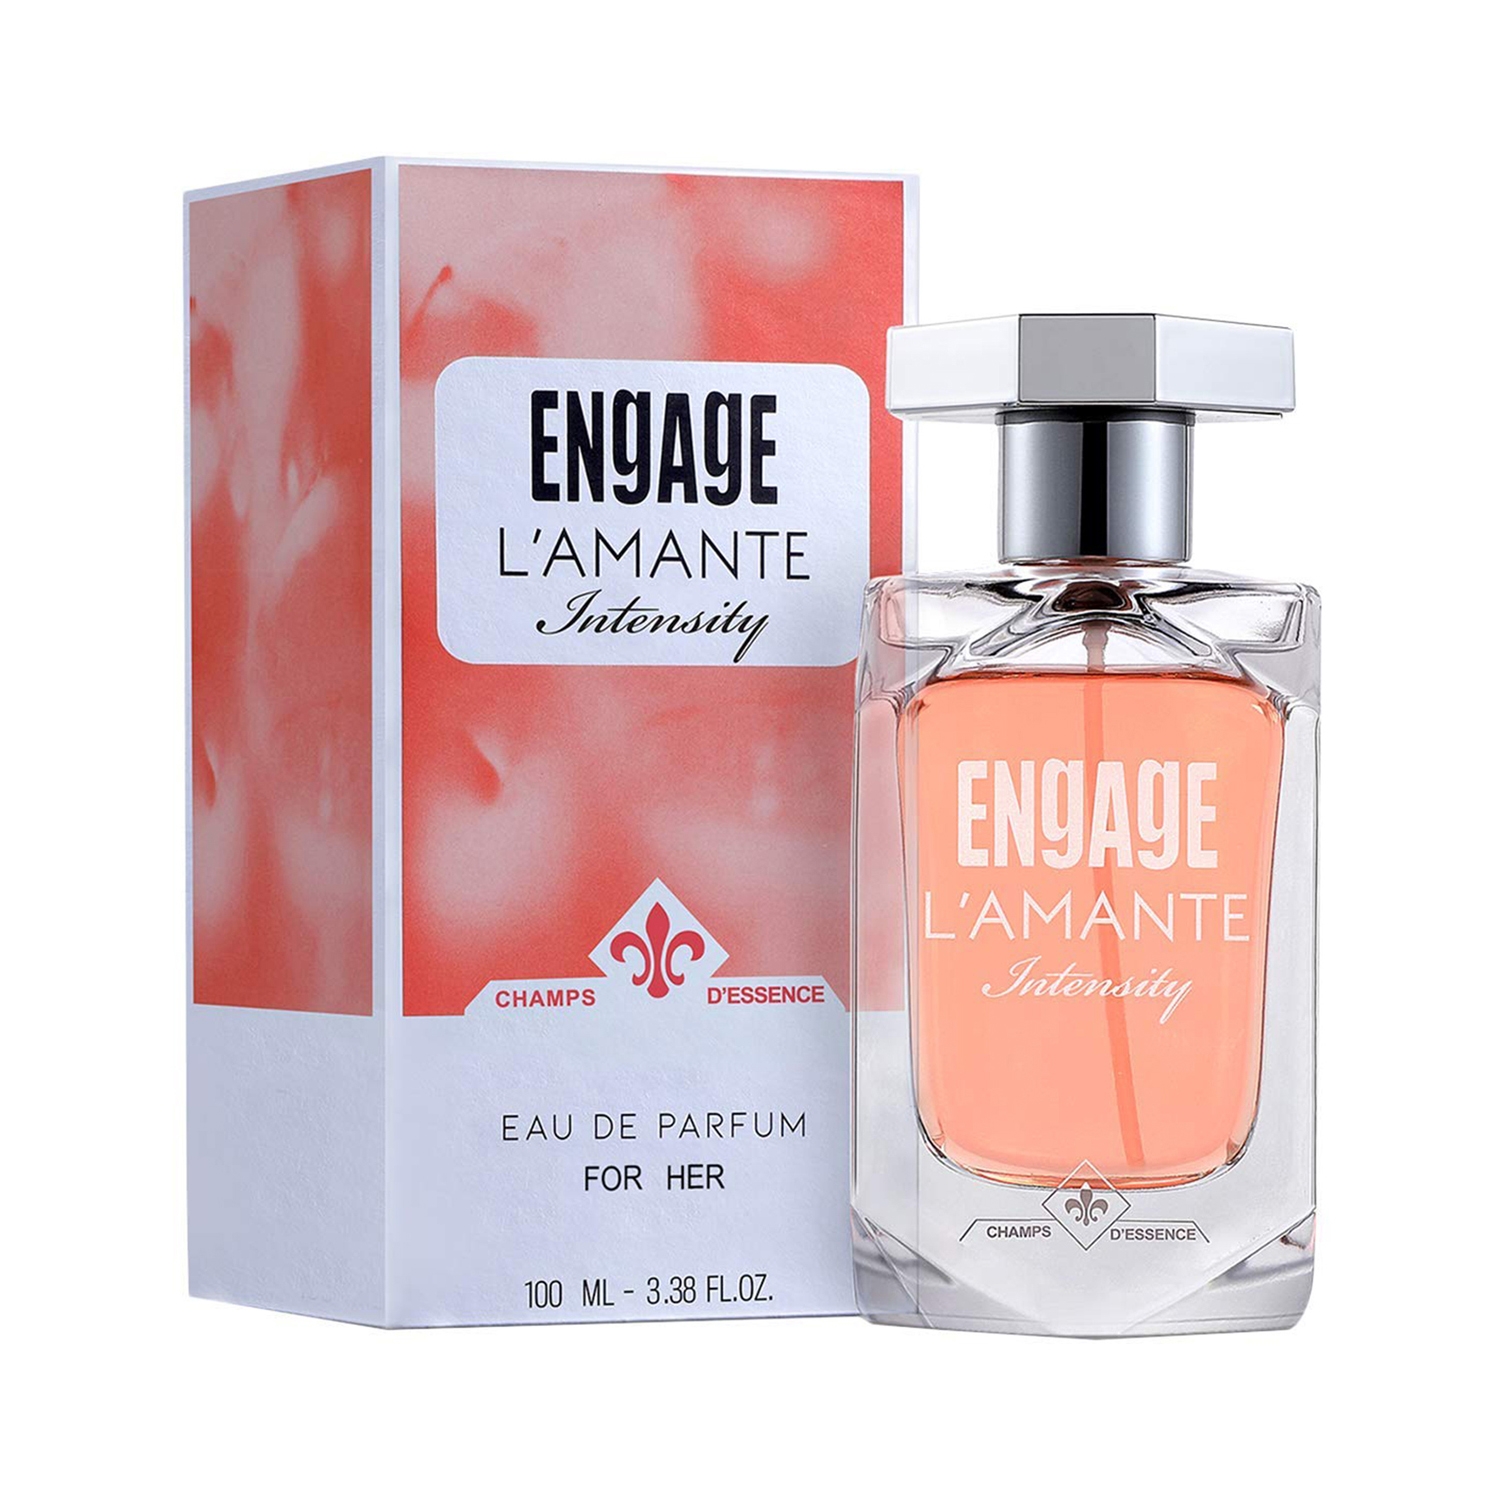 Engage | Engage L'amante Intensity Eau De Parfum For Her (100ml)